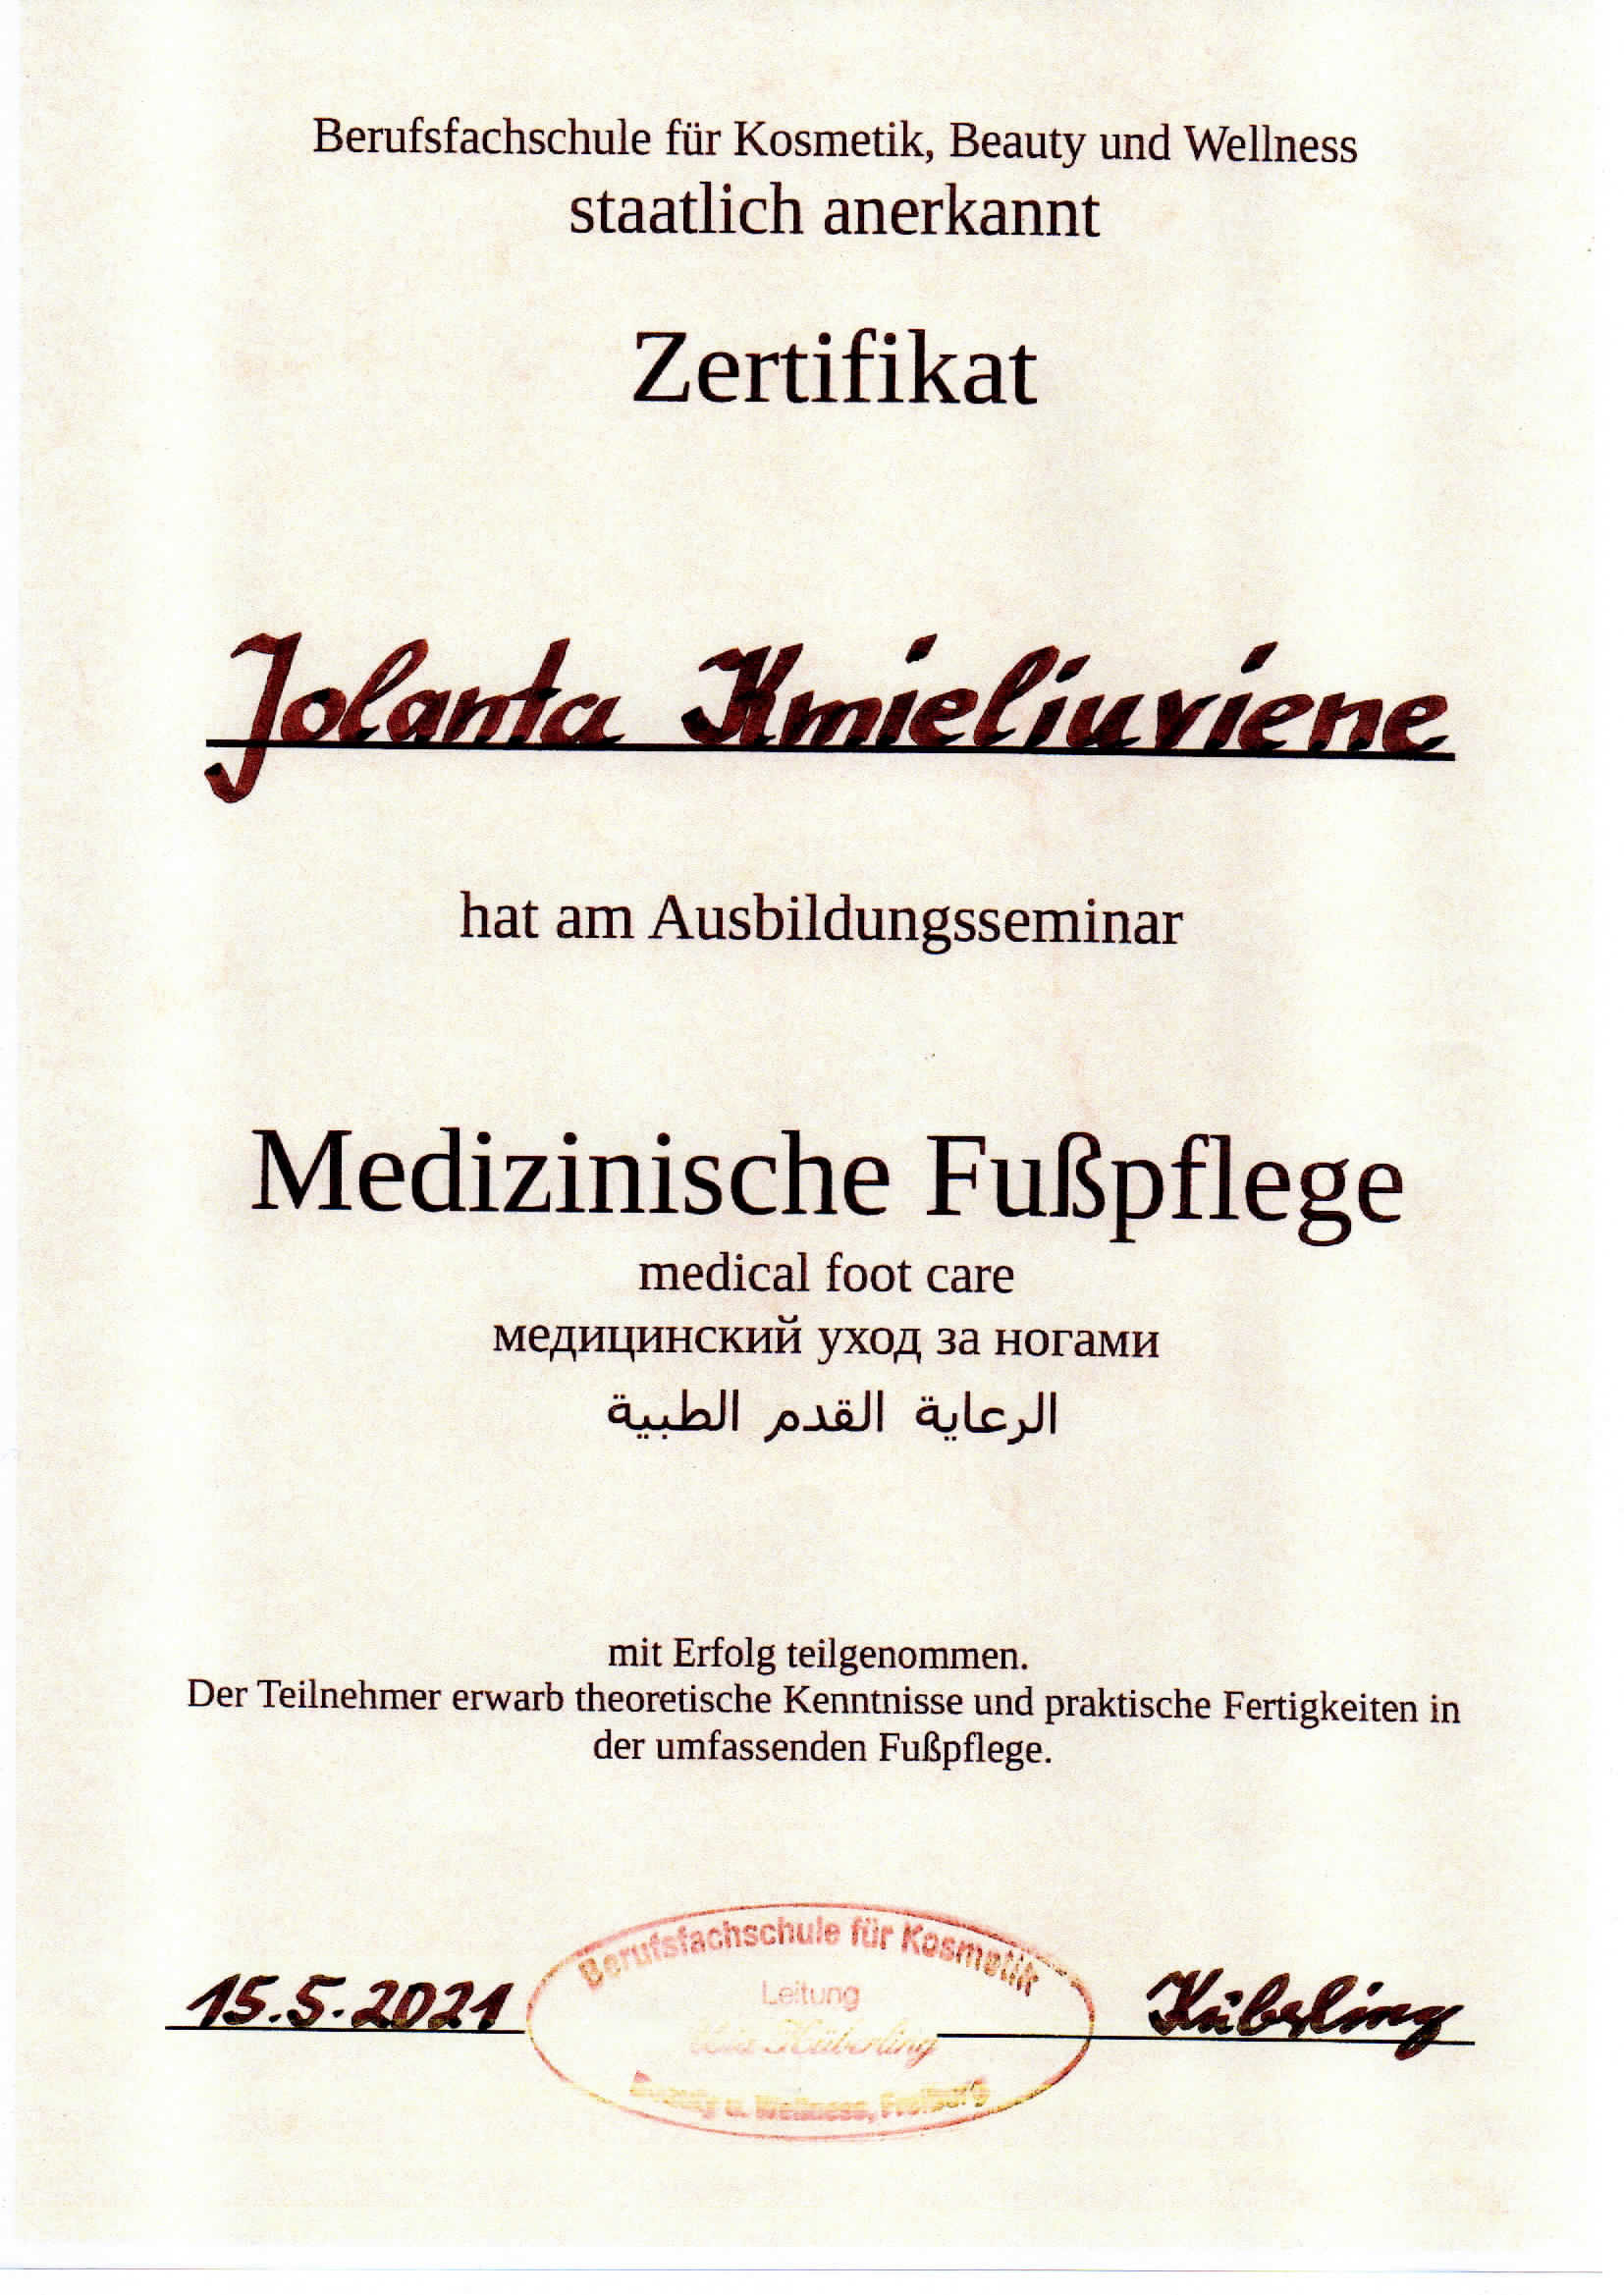 Zertifikat Medizinische Fusspflege Jolanta